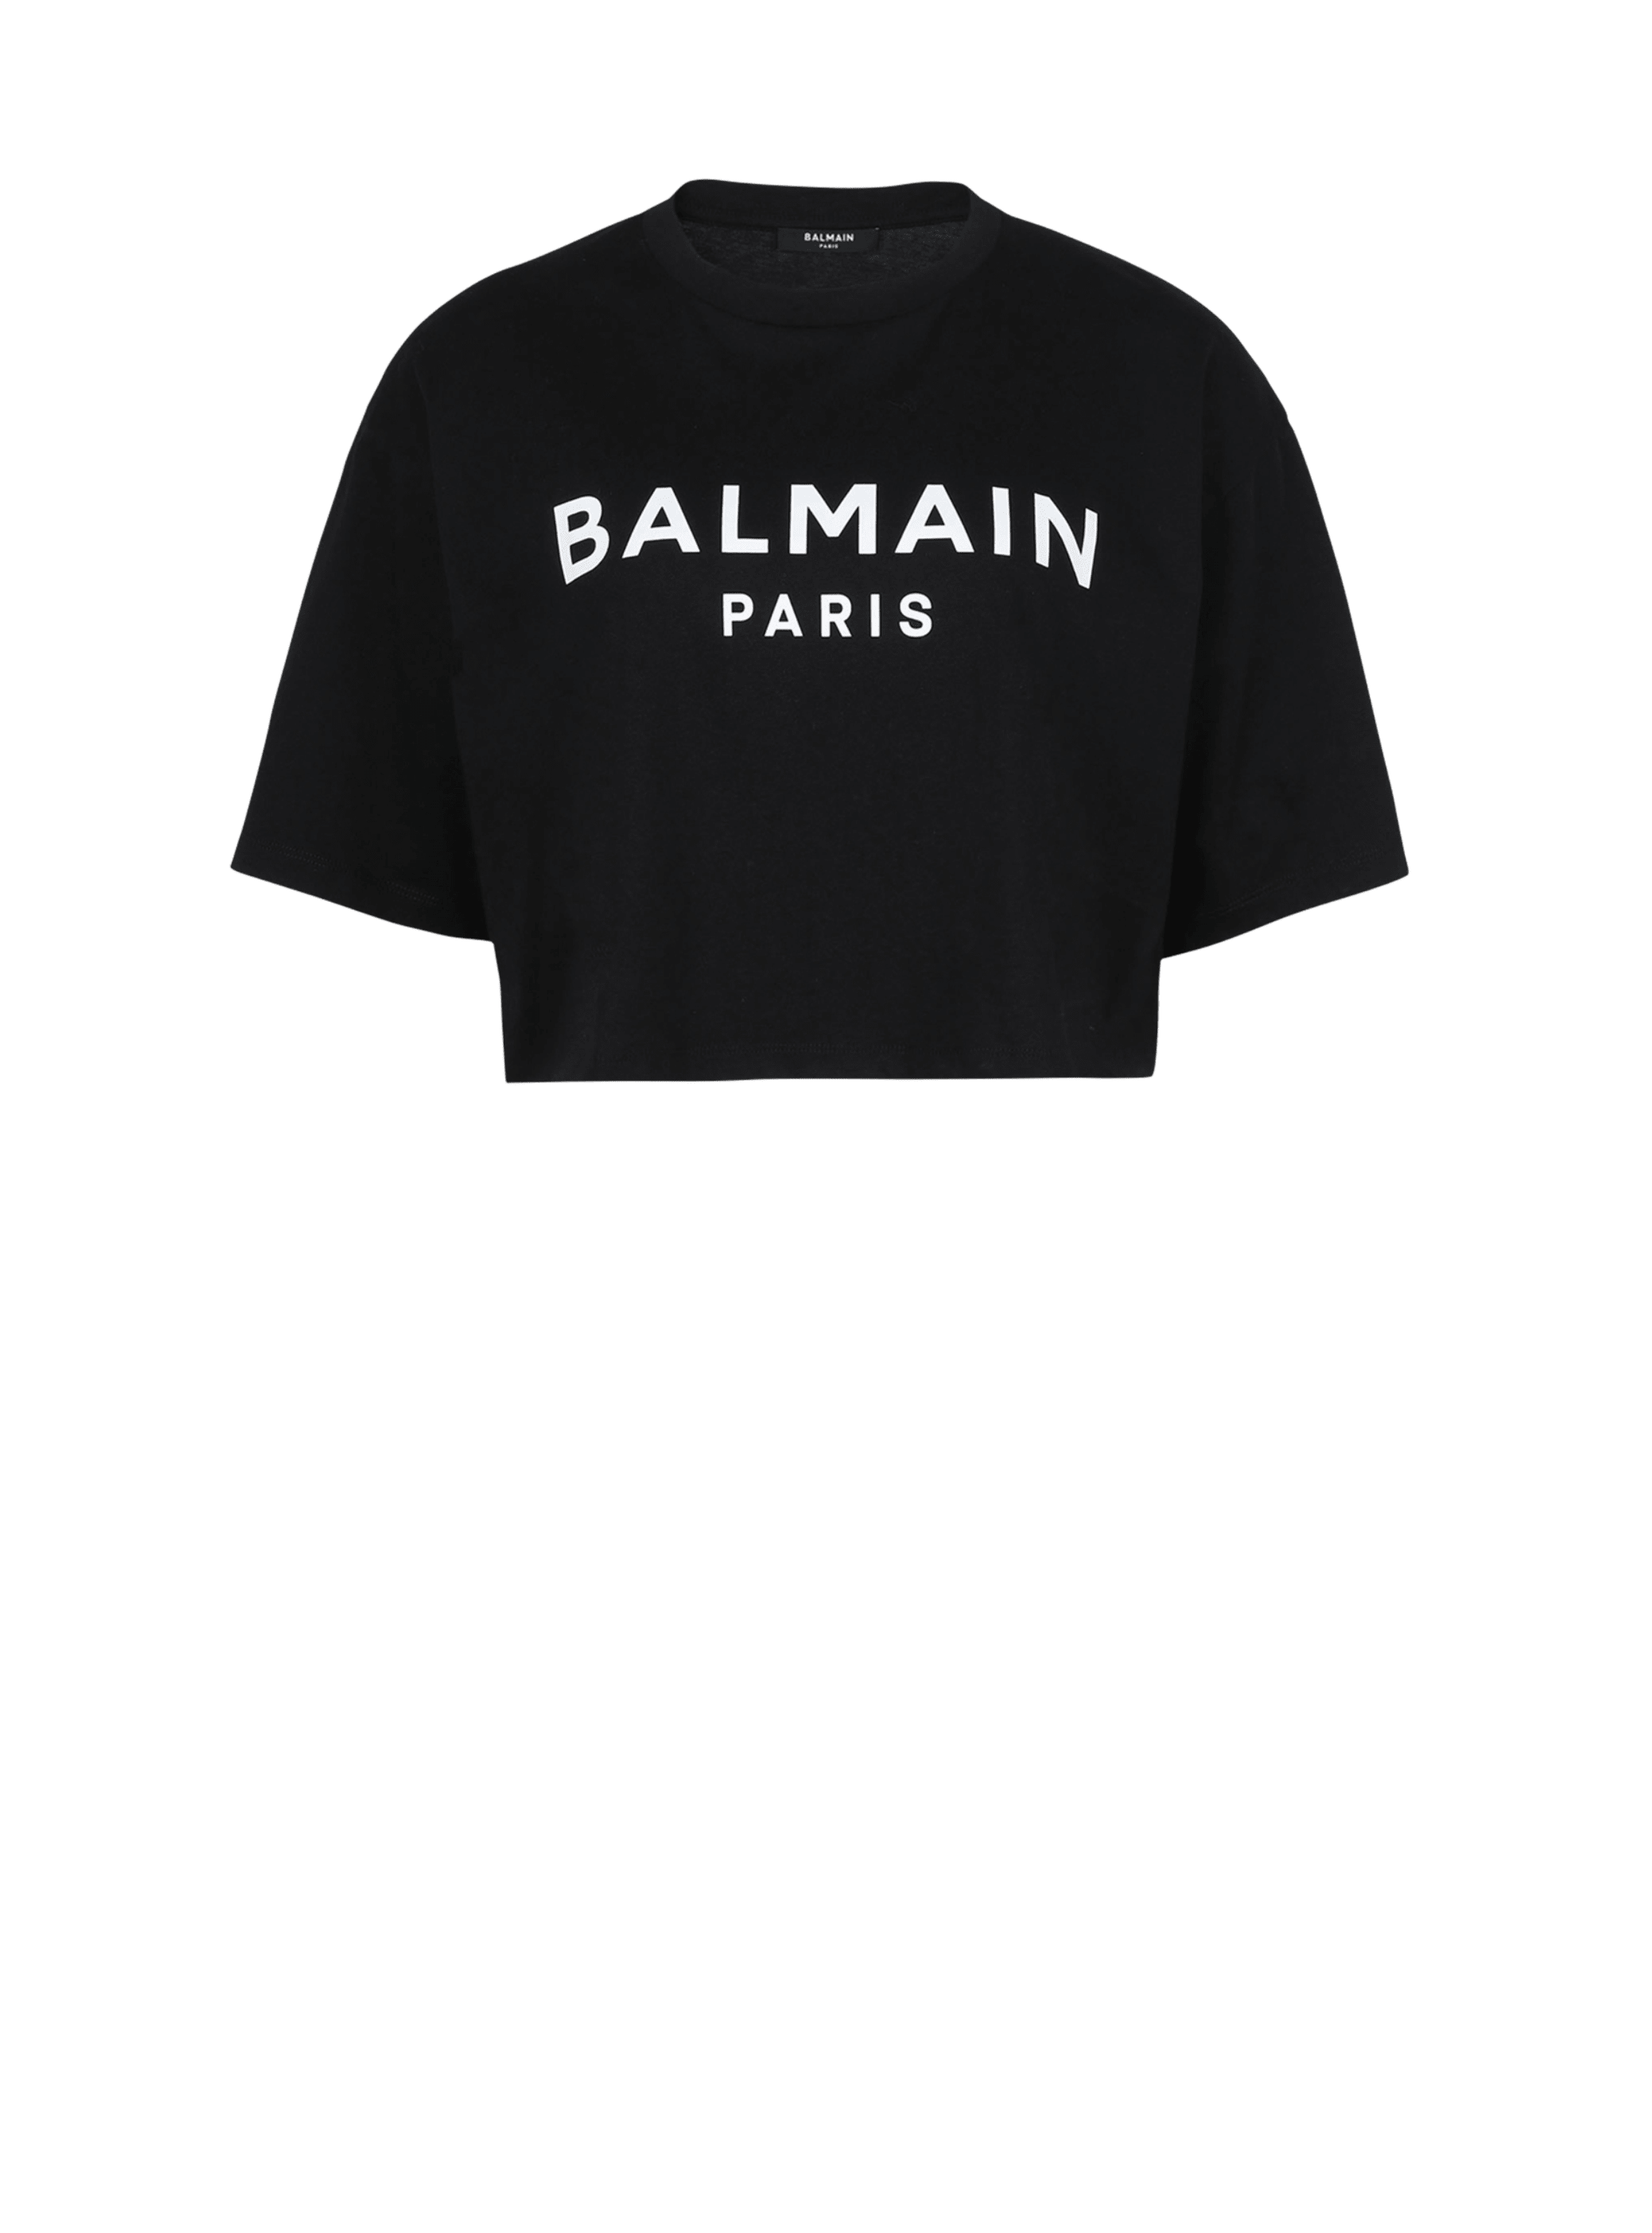 T-shirt court en coton éco-responsable imprimé logo Balmain, noir, hi-res